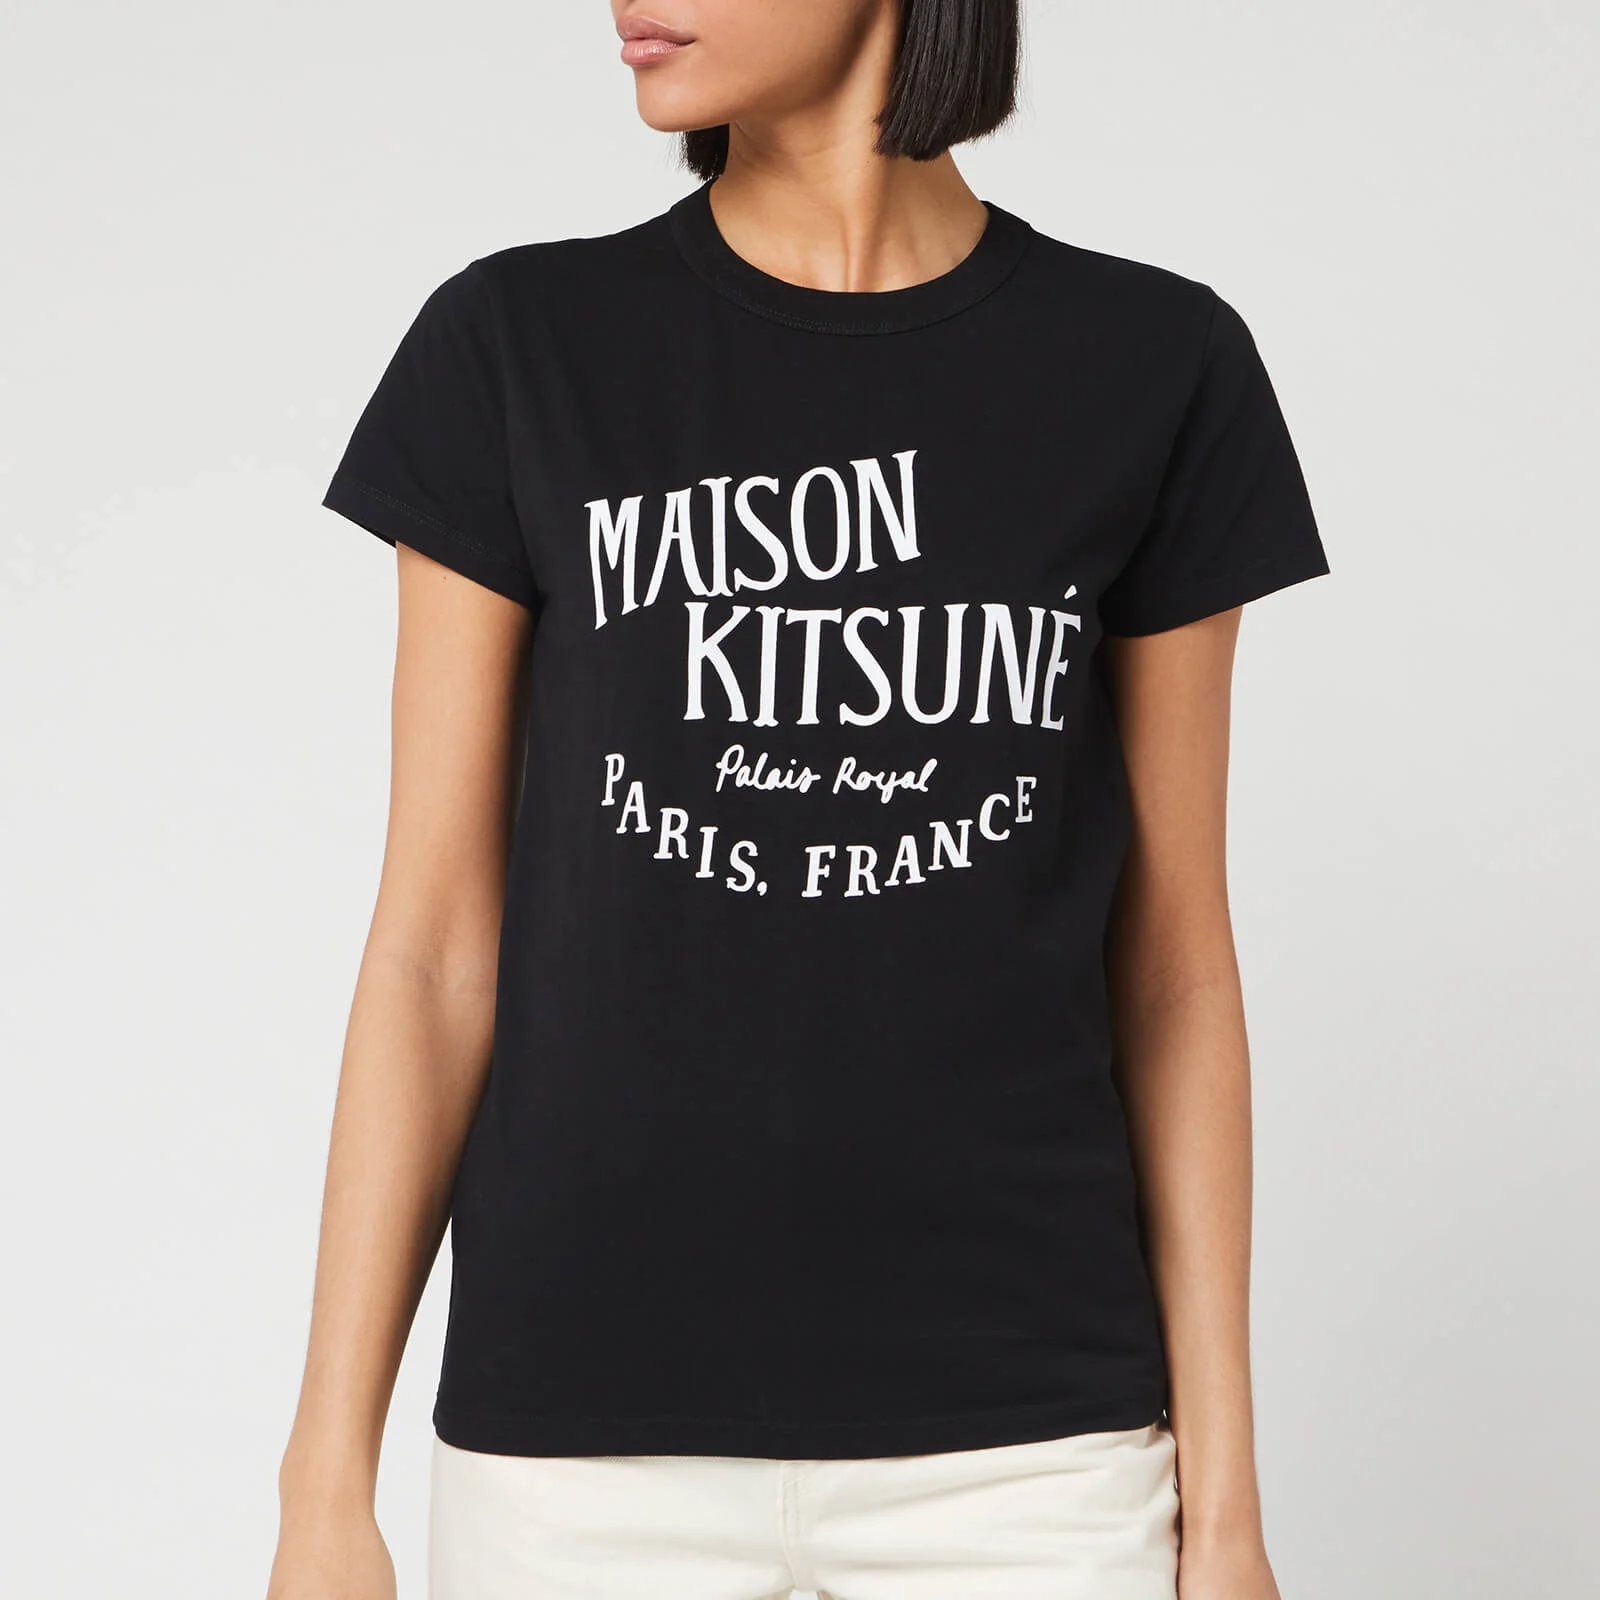 Maison Kitsuné Women's T-Shirt Palais Royal - Black Image 1